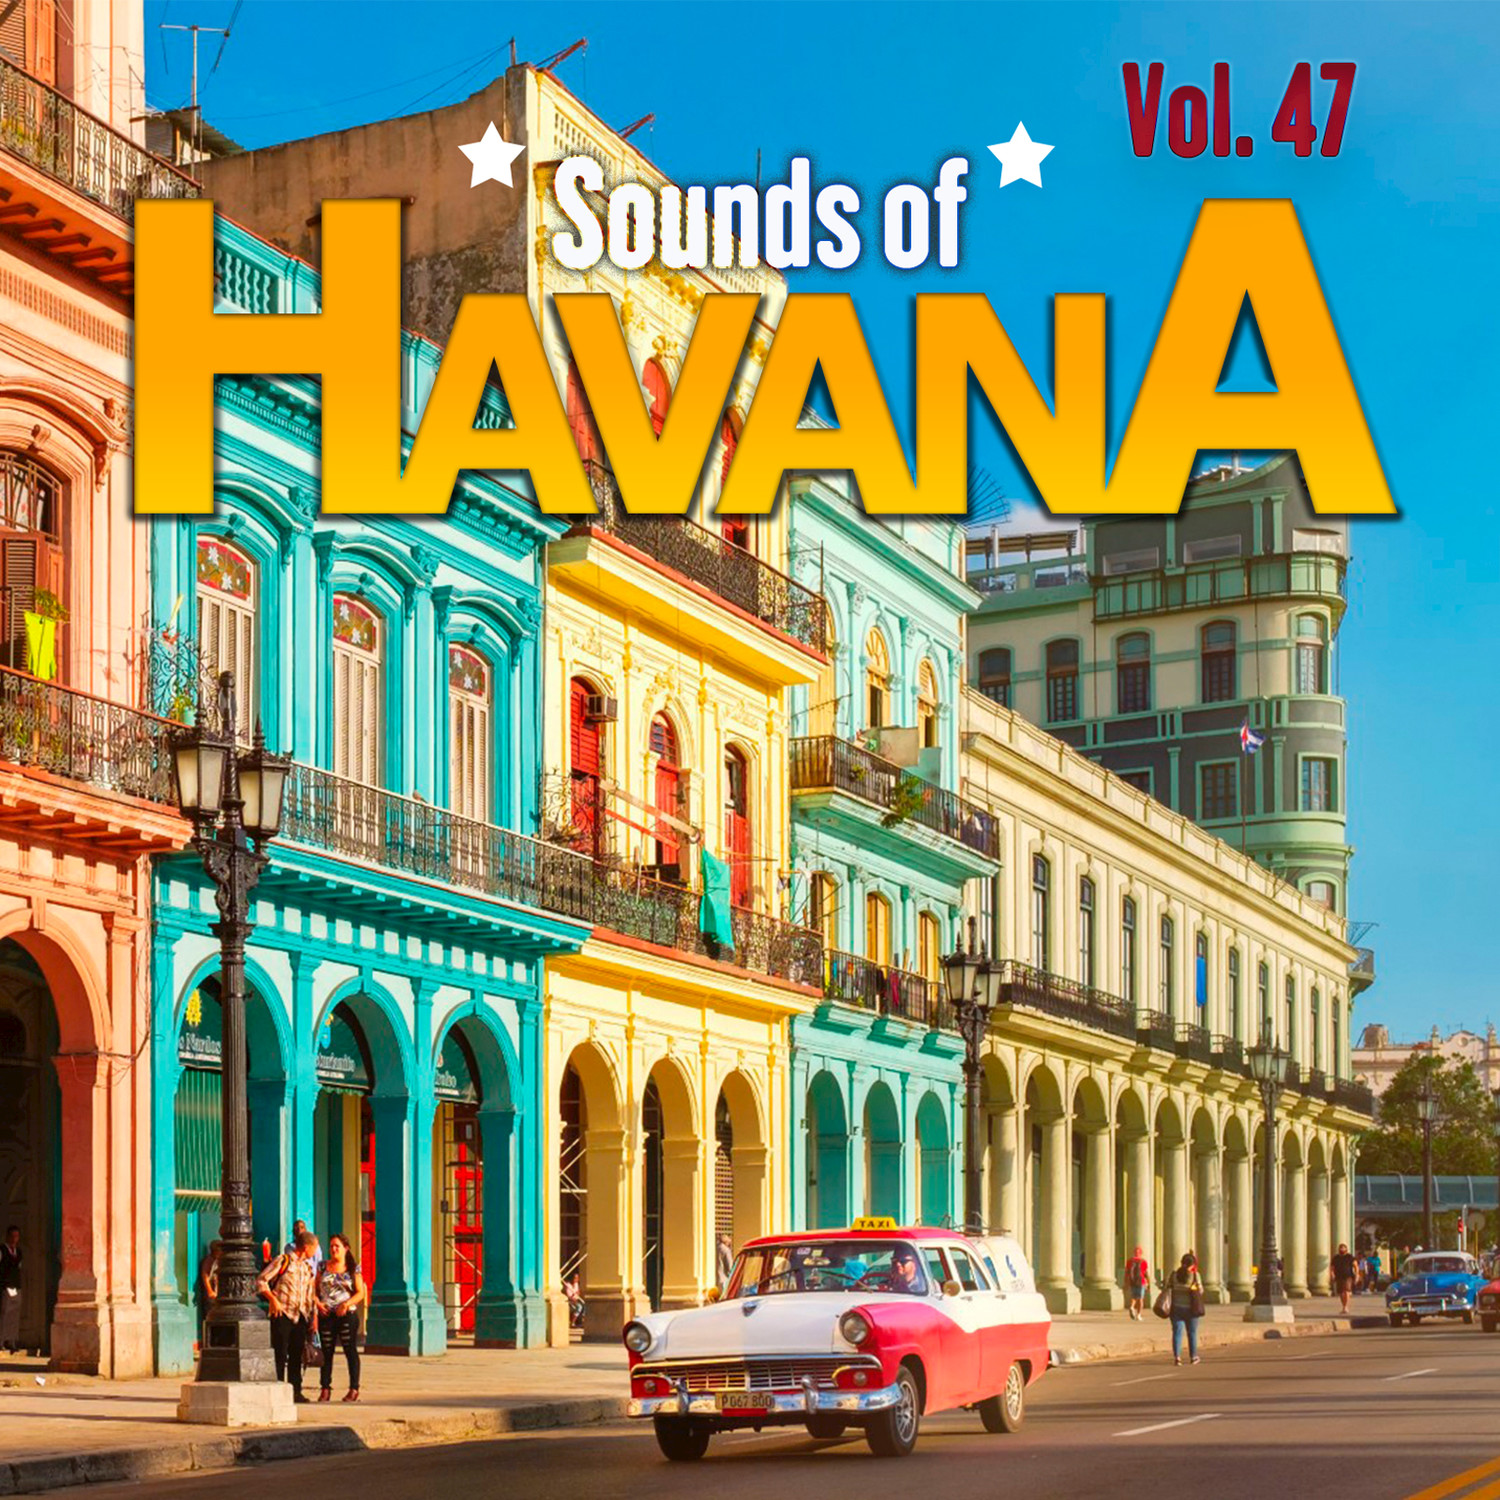 Sounds of Havana, Vol. 47